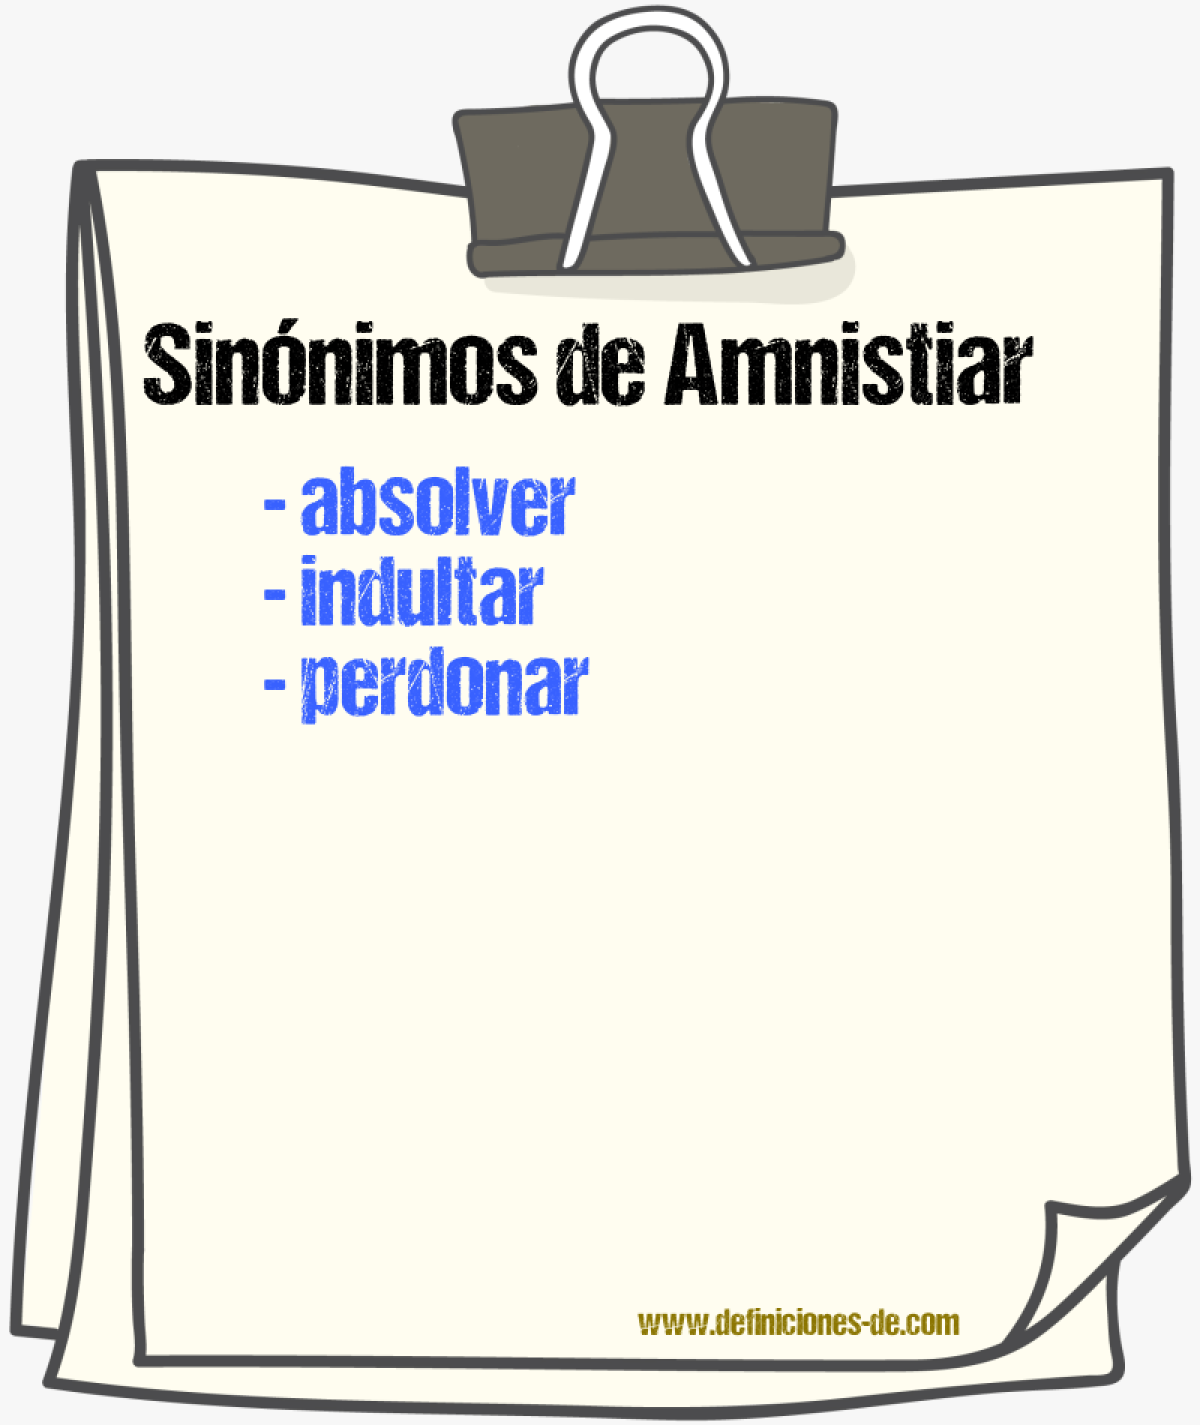 Sinónimos de amnistiar